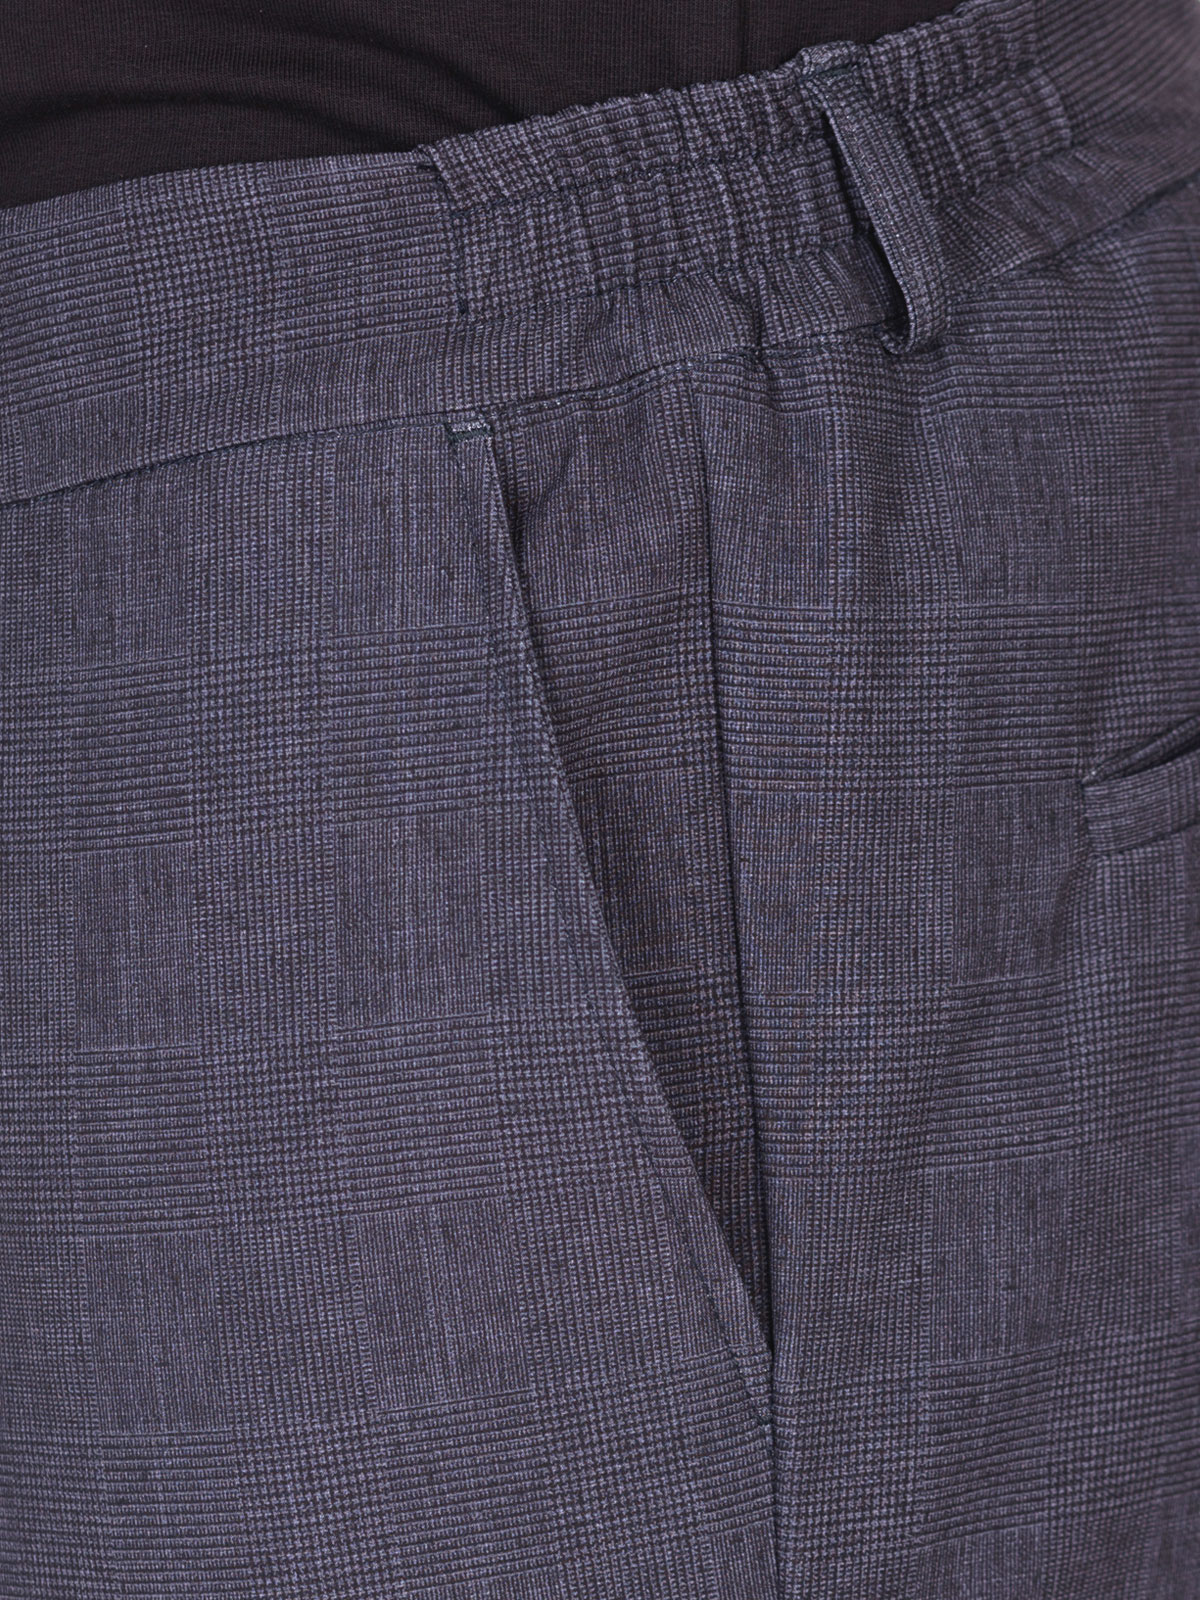 Pantaloni pentru bărbați de culoare gri  - 29007 € 55.12 img3